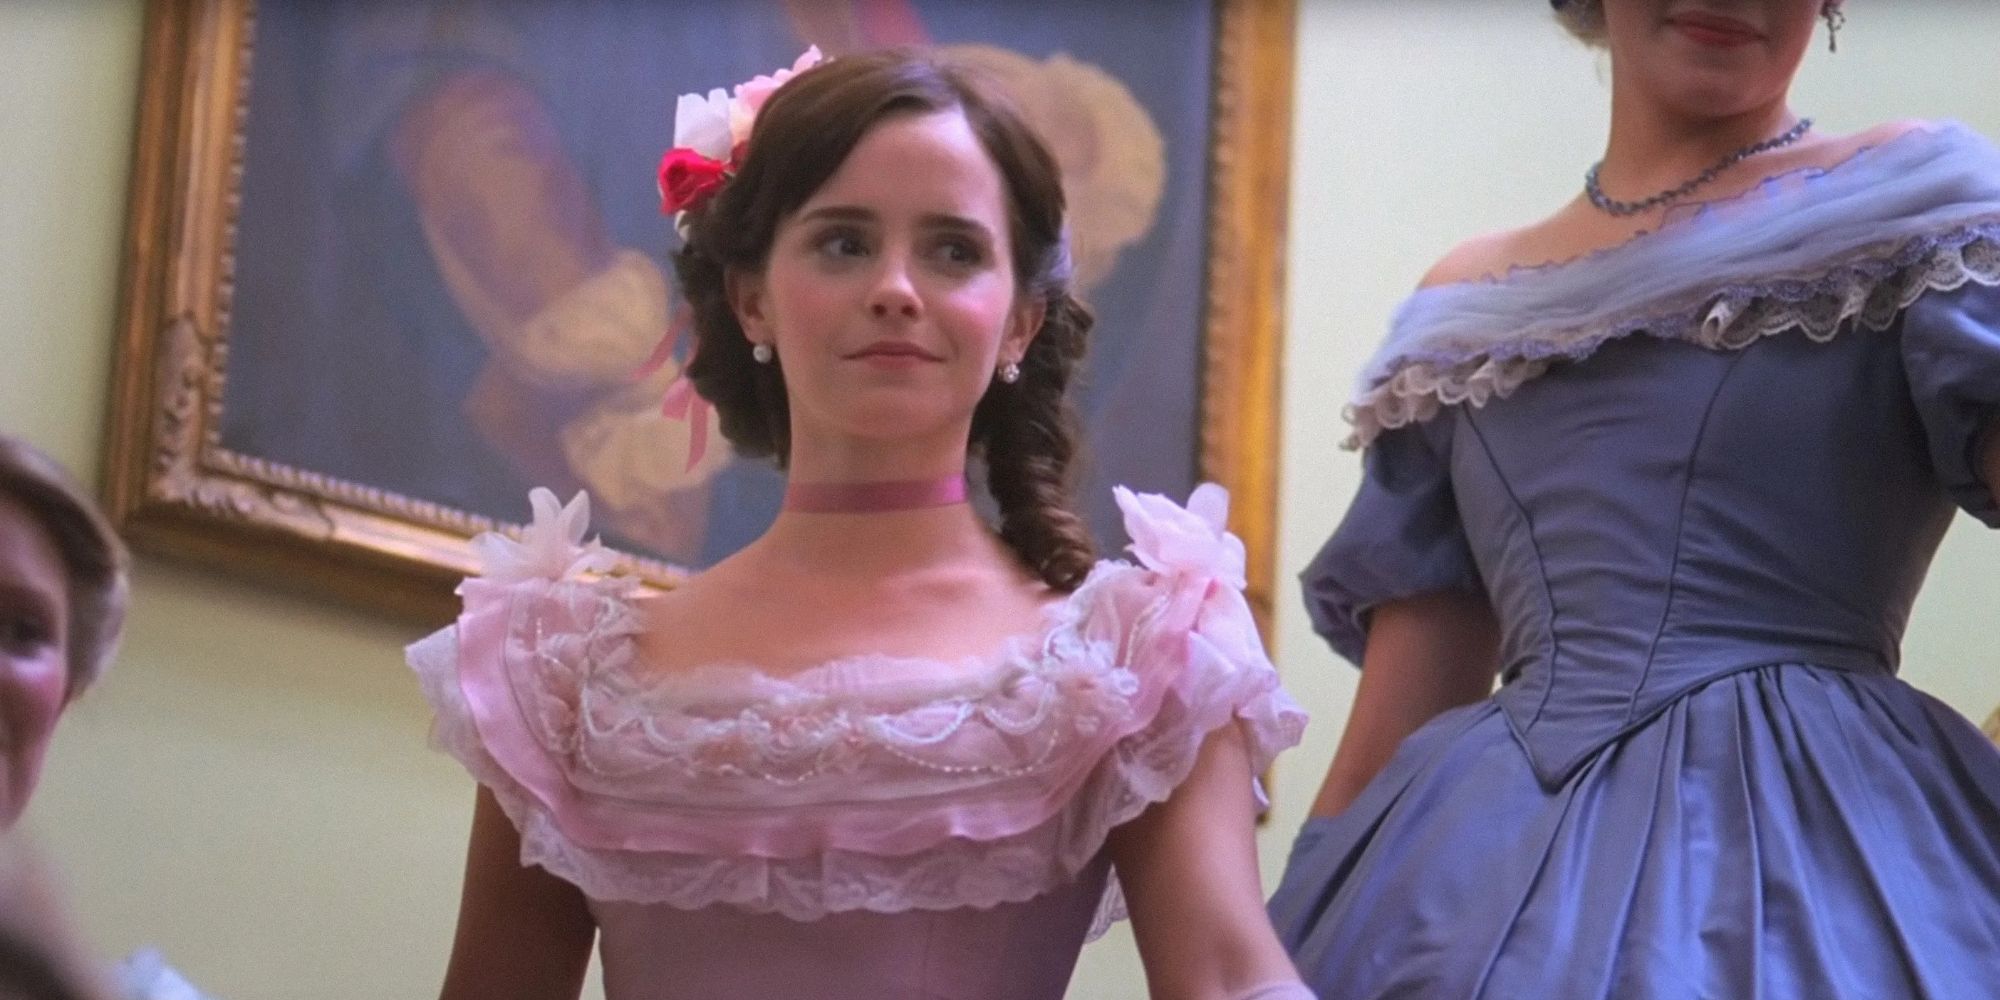 Meg March portant une robe rose dans 'Les petites femmes' (2019).